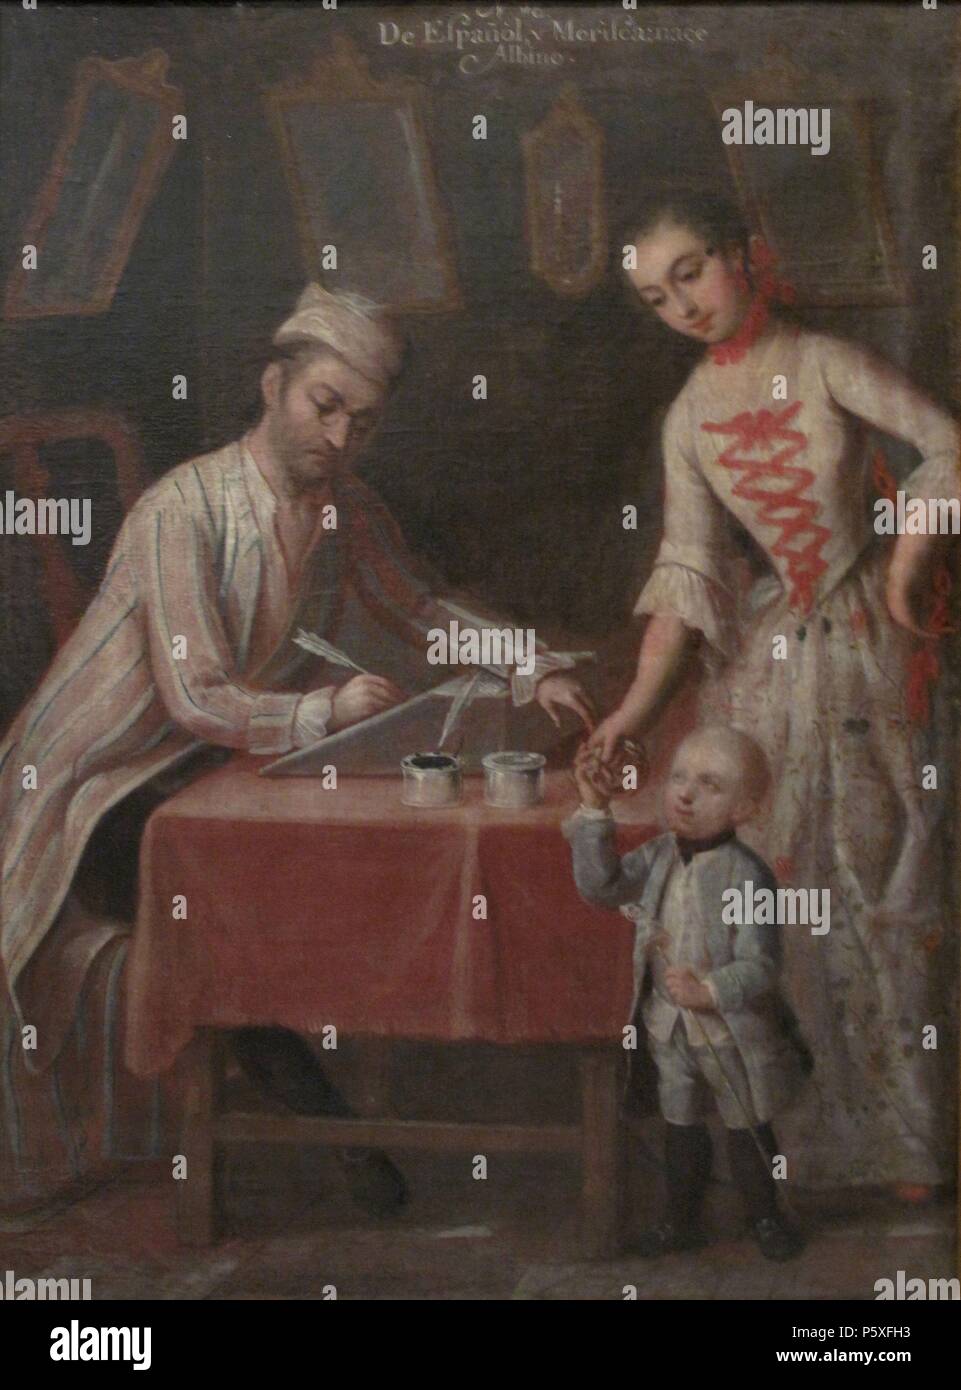 'Castas. De español y morisca, albino', 1774, Oil on canvas, 75 x 54 cm. Author: Andres de Islas (fl. 1753-1775). Location: MUSEO DE AMERICA-COLECCION, MADRID, SPAIN. Stock Photo